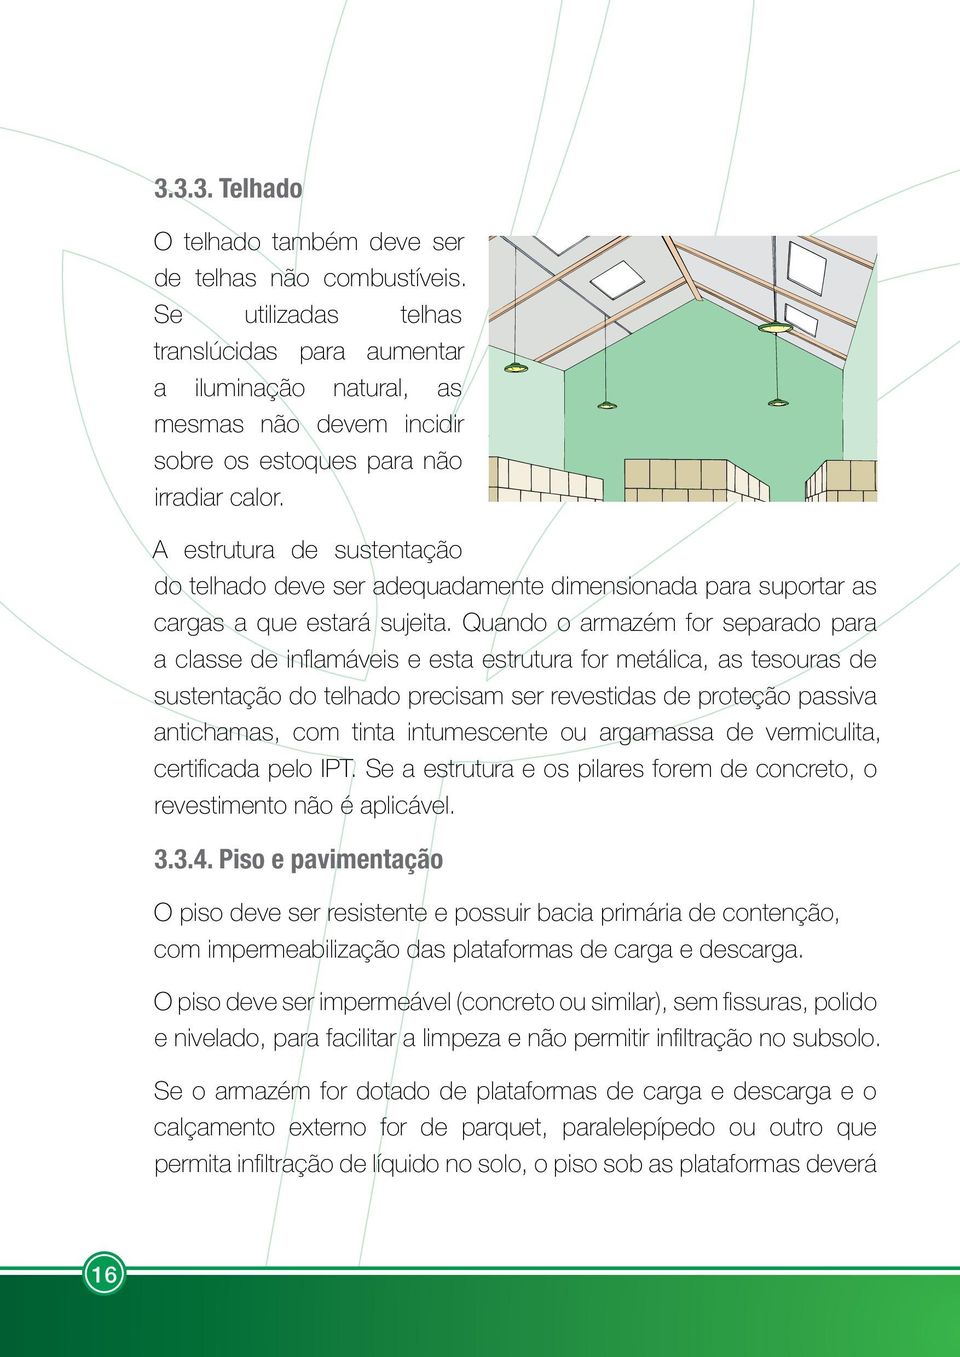 A estrutura de sustentação do telhado deve ser adequadamente dimensionada para suportar as cargas a que estará sujeita.